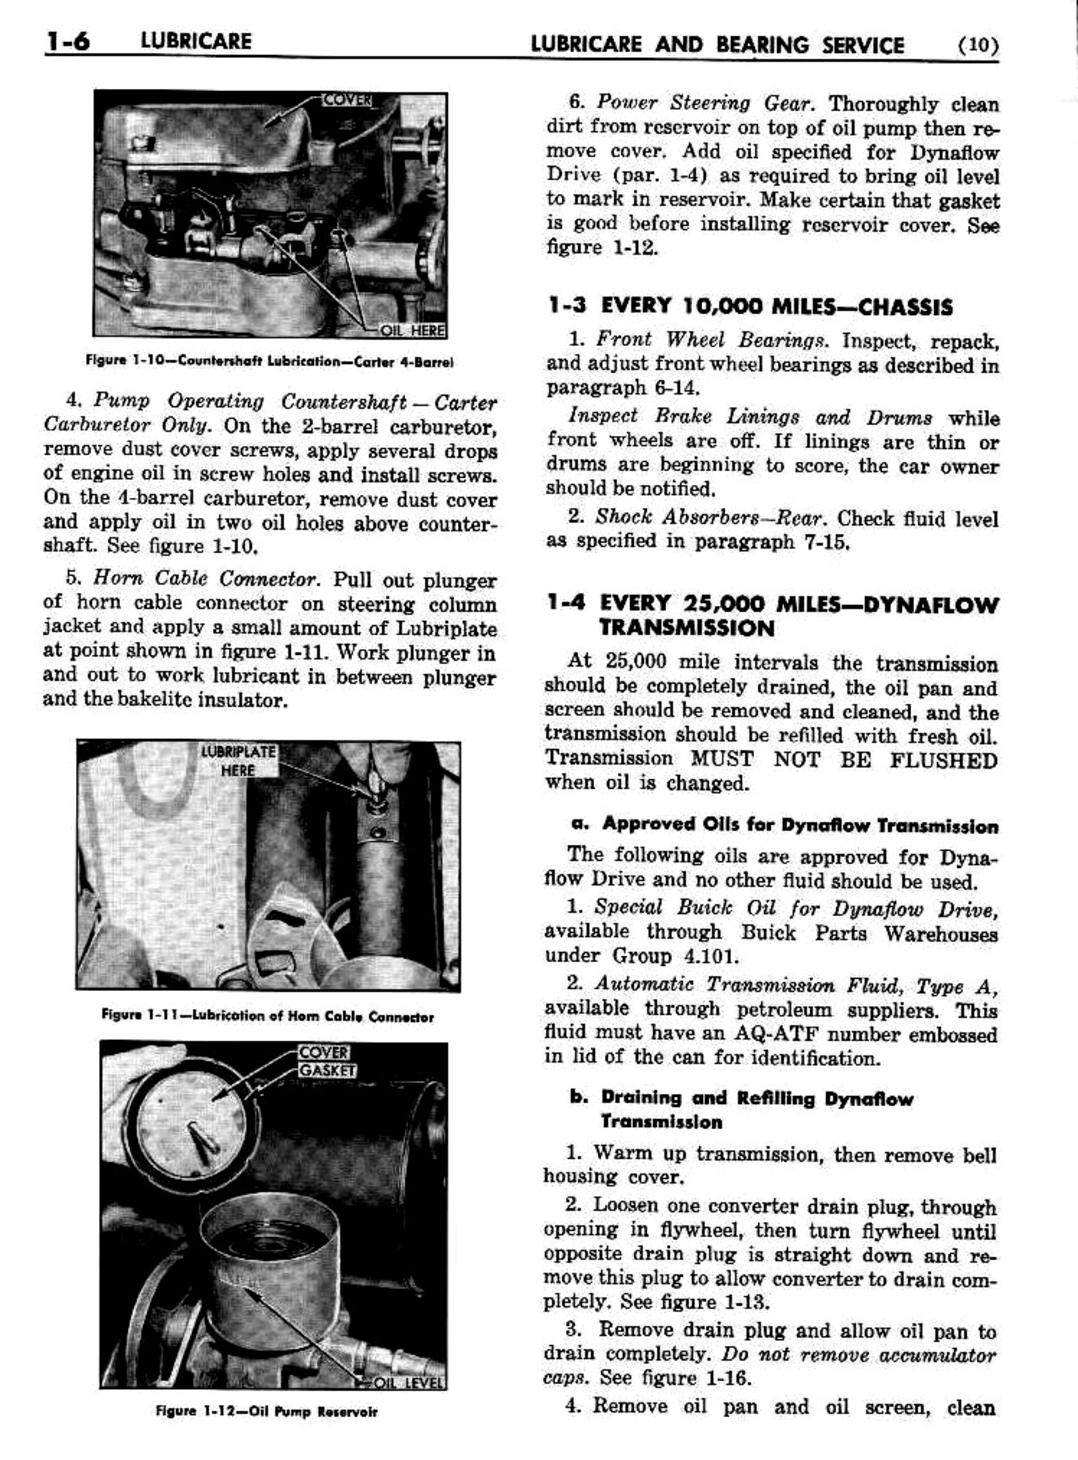 n_02 1954 Buick Shop Manual - Lubricare-006-006.jpg